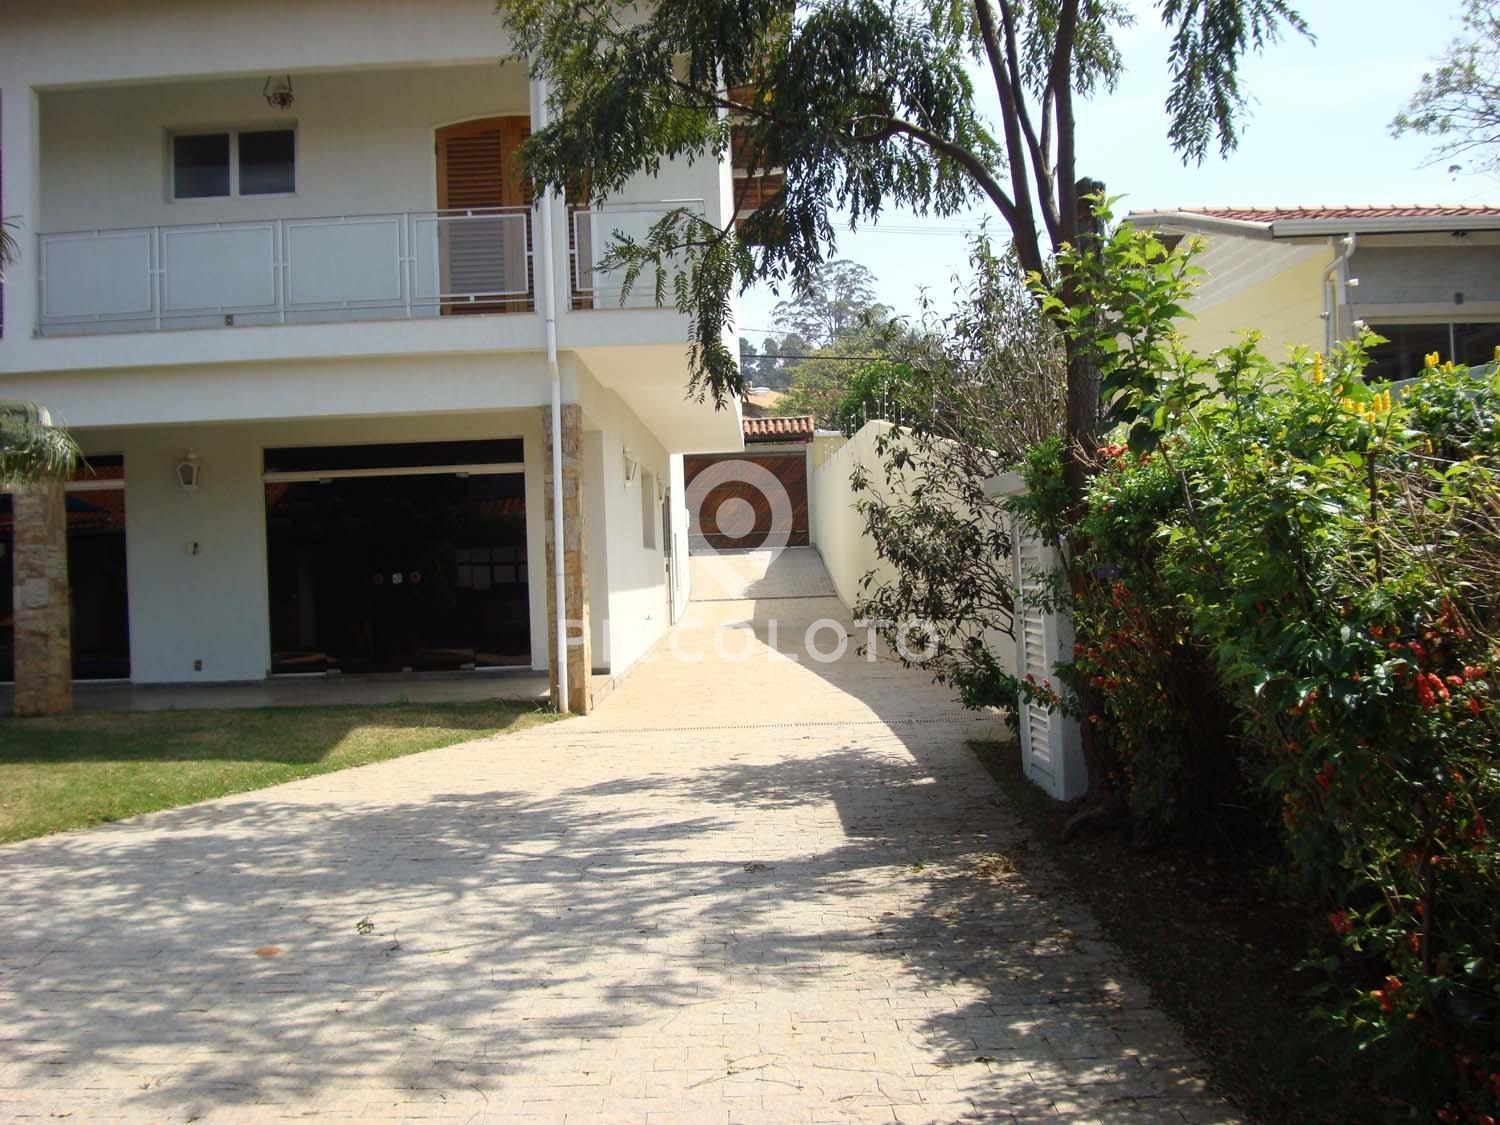 Piccoloto -Casa à venda no Parque Taquaral em Campinas